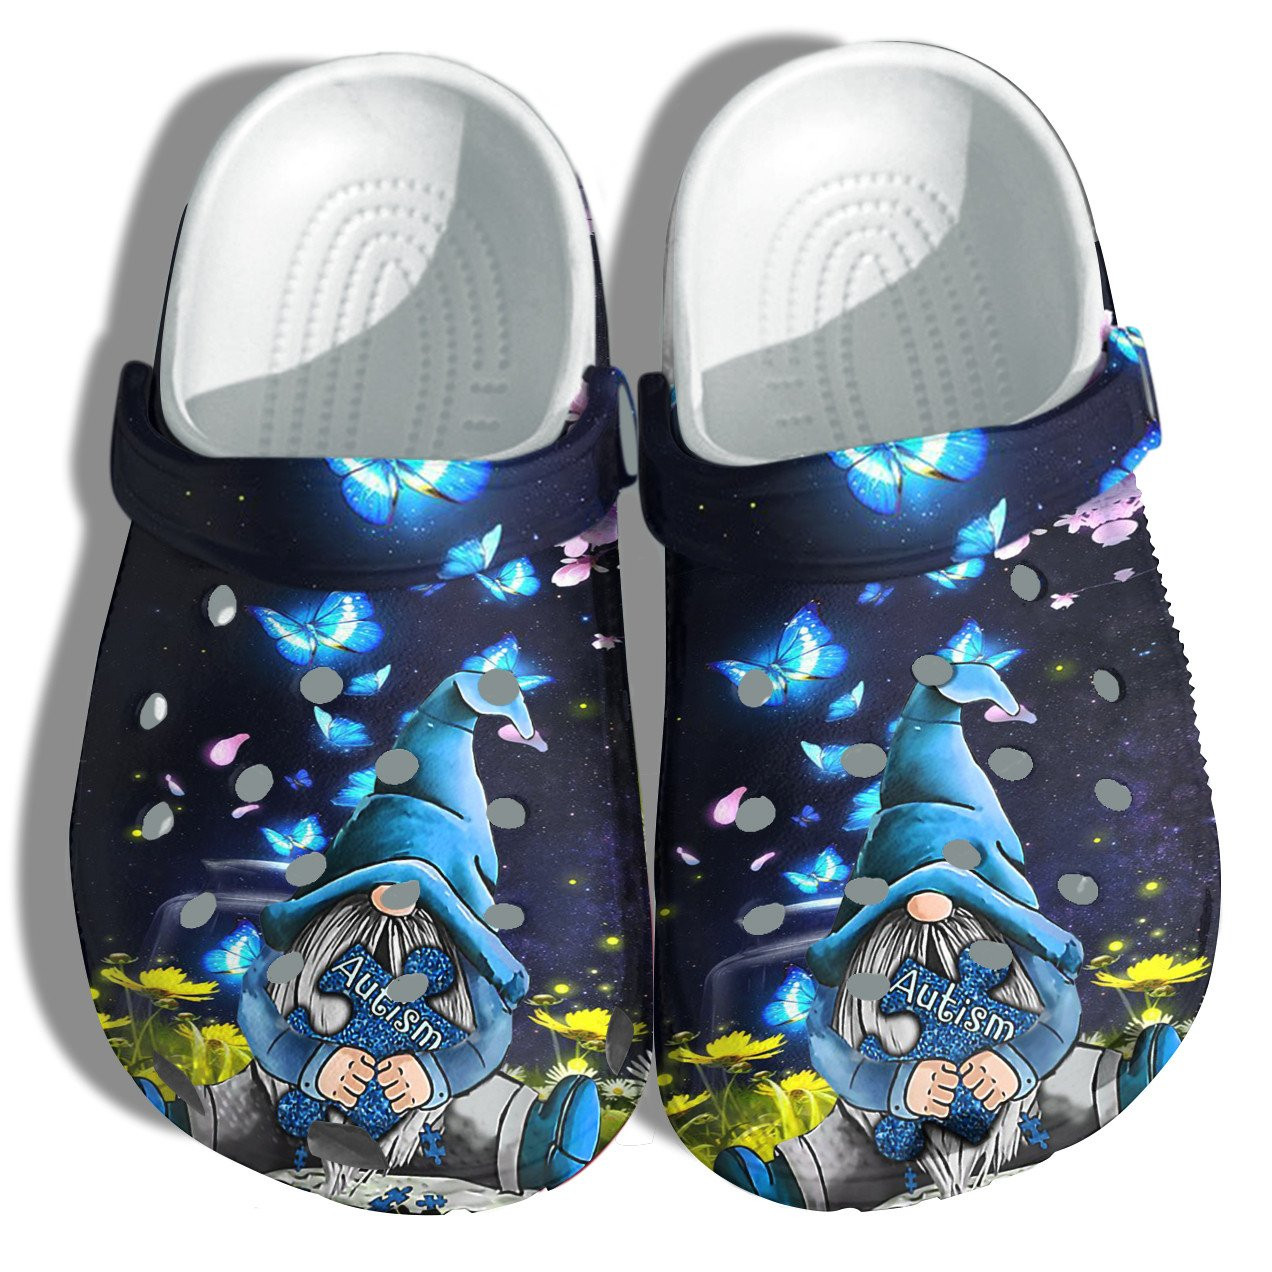 Butterfly Blue Gnomies Hug Autism Puzzel Crocs Shoes - Wear Blue April Autism Shoes Croc Clogs